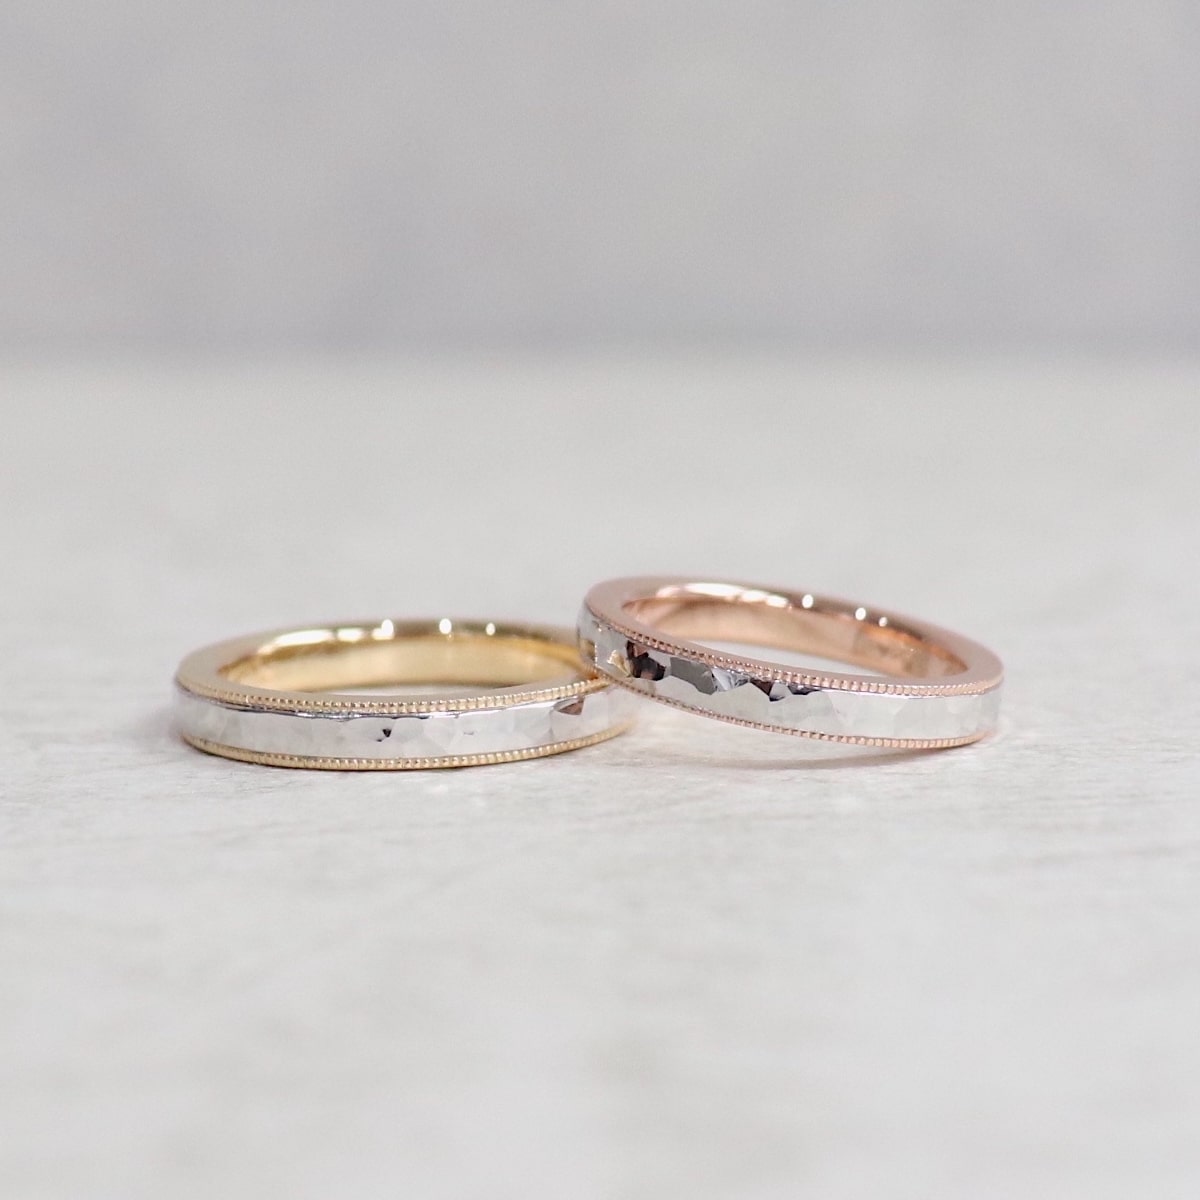 鎚目とミルグレインのコンビネーション結婚指輪